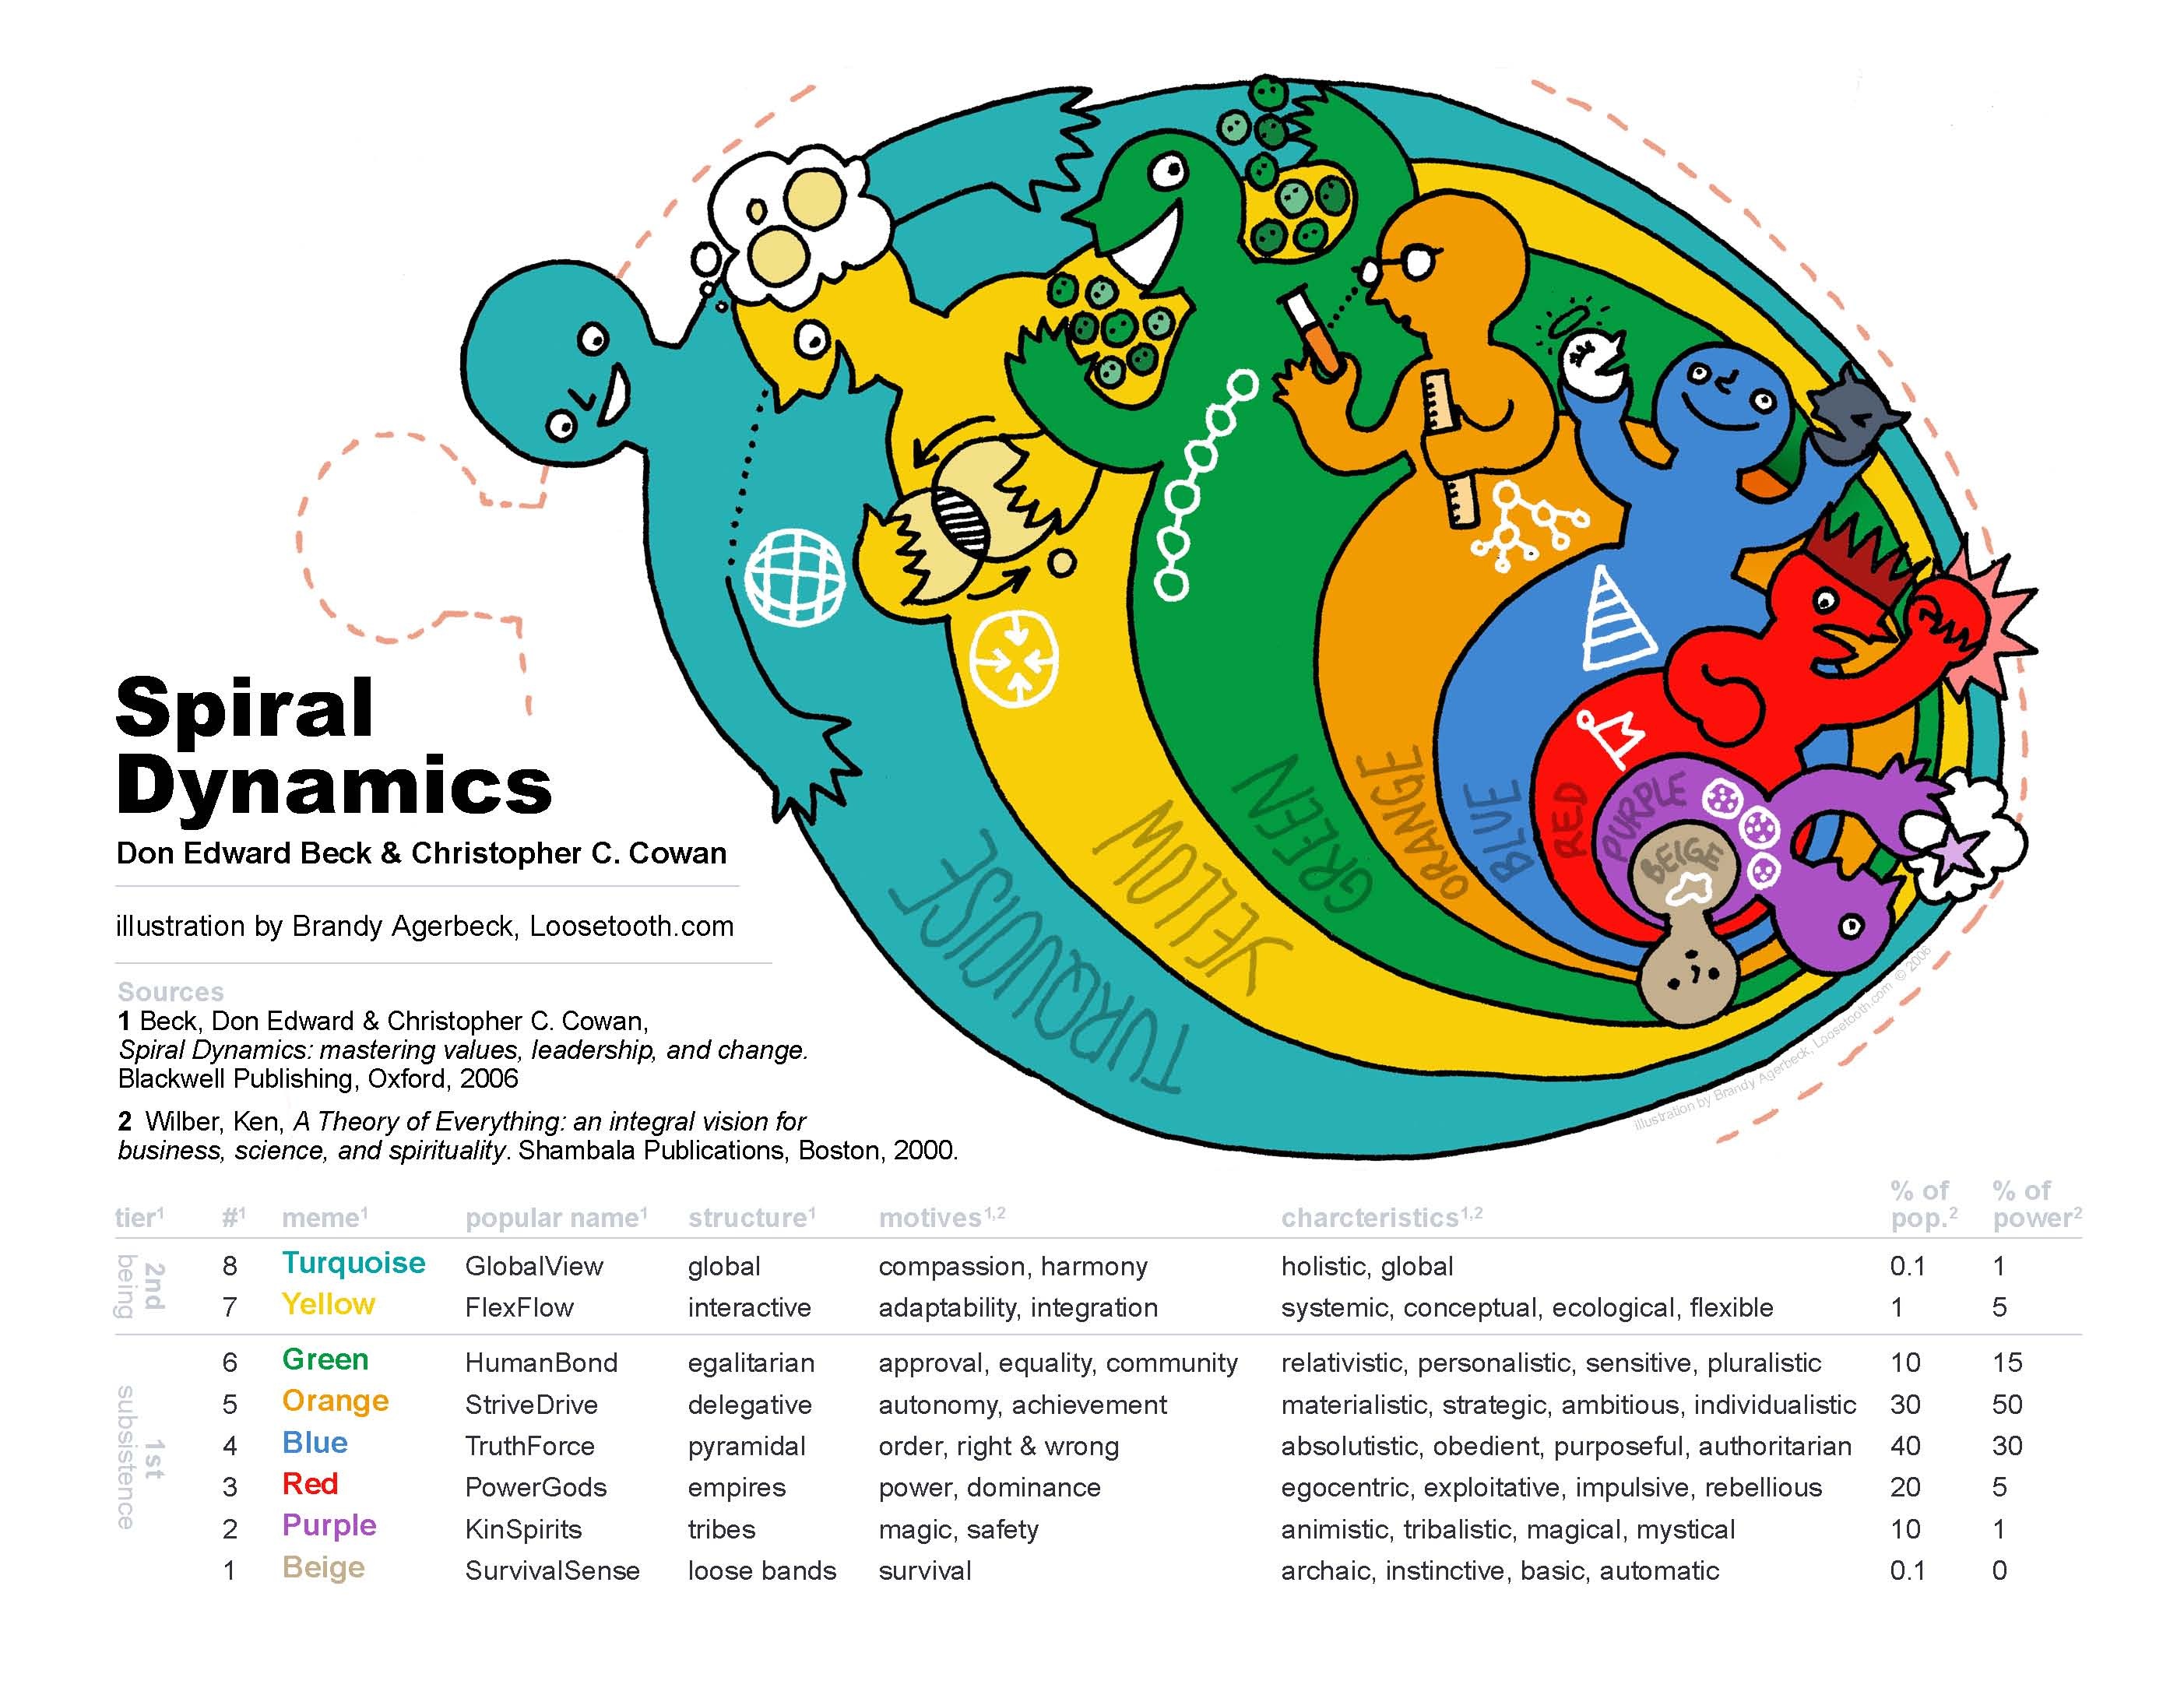 Spiral Dynamics, attēls no http://www.cruxcatalyst.com/2013/09/26/spiral-dynamics-a-way-of-understanding-human-nature/